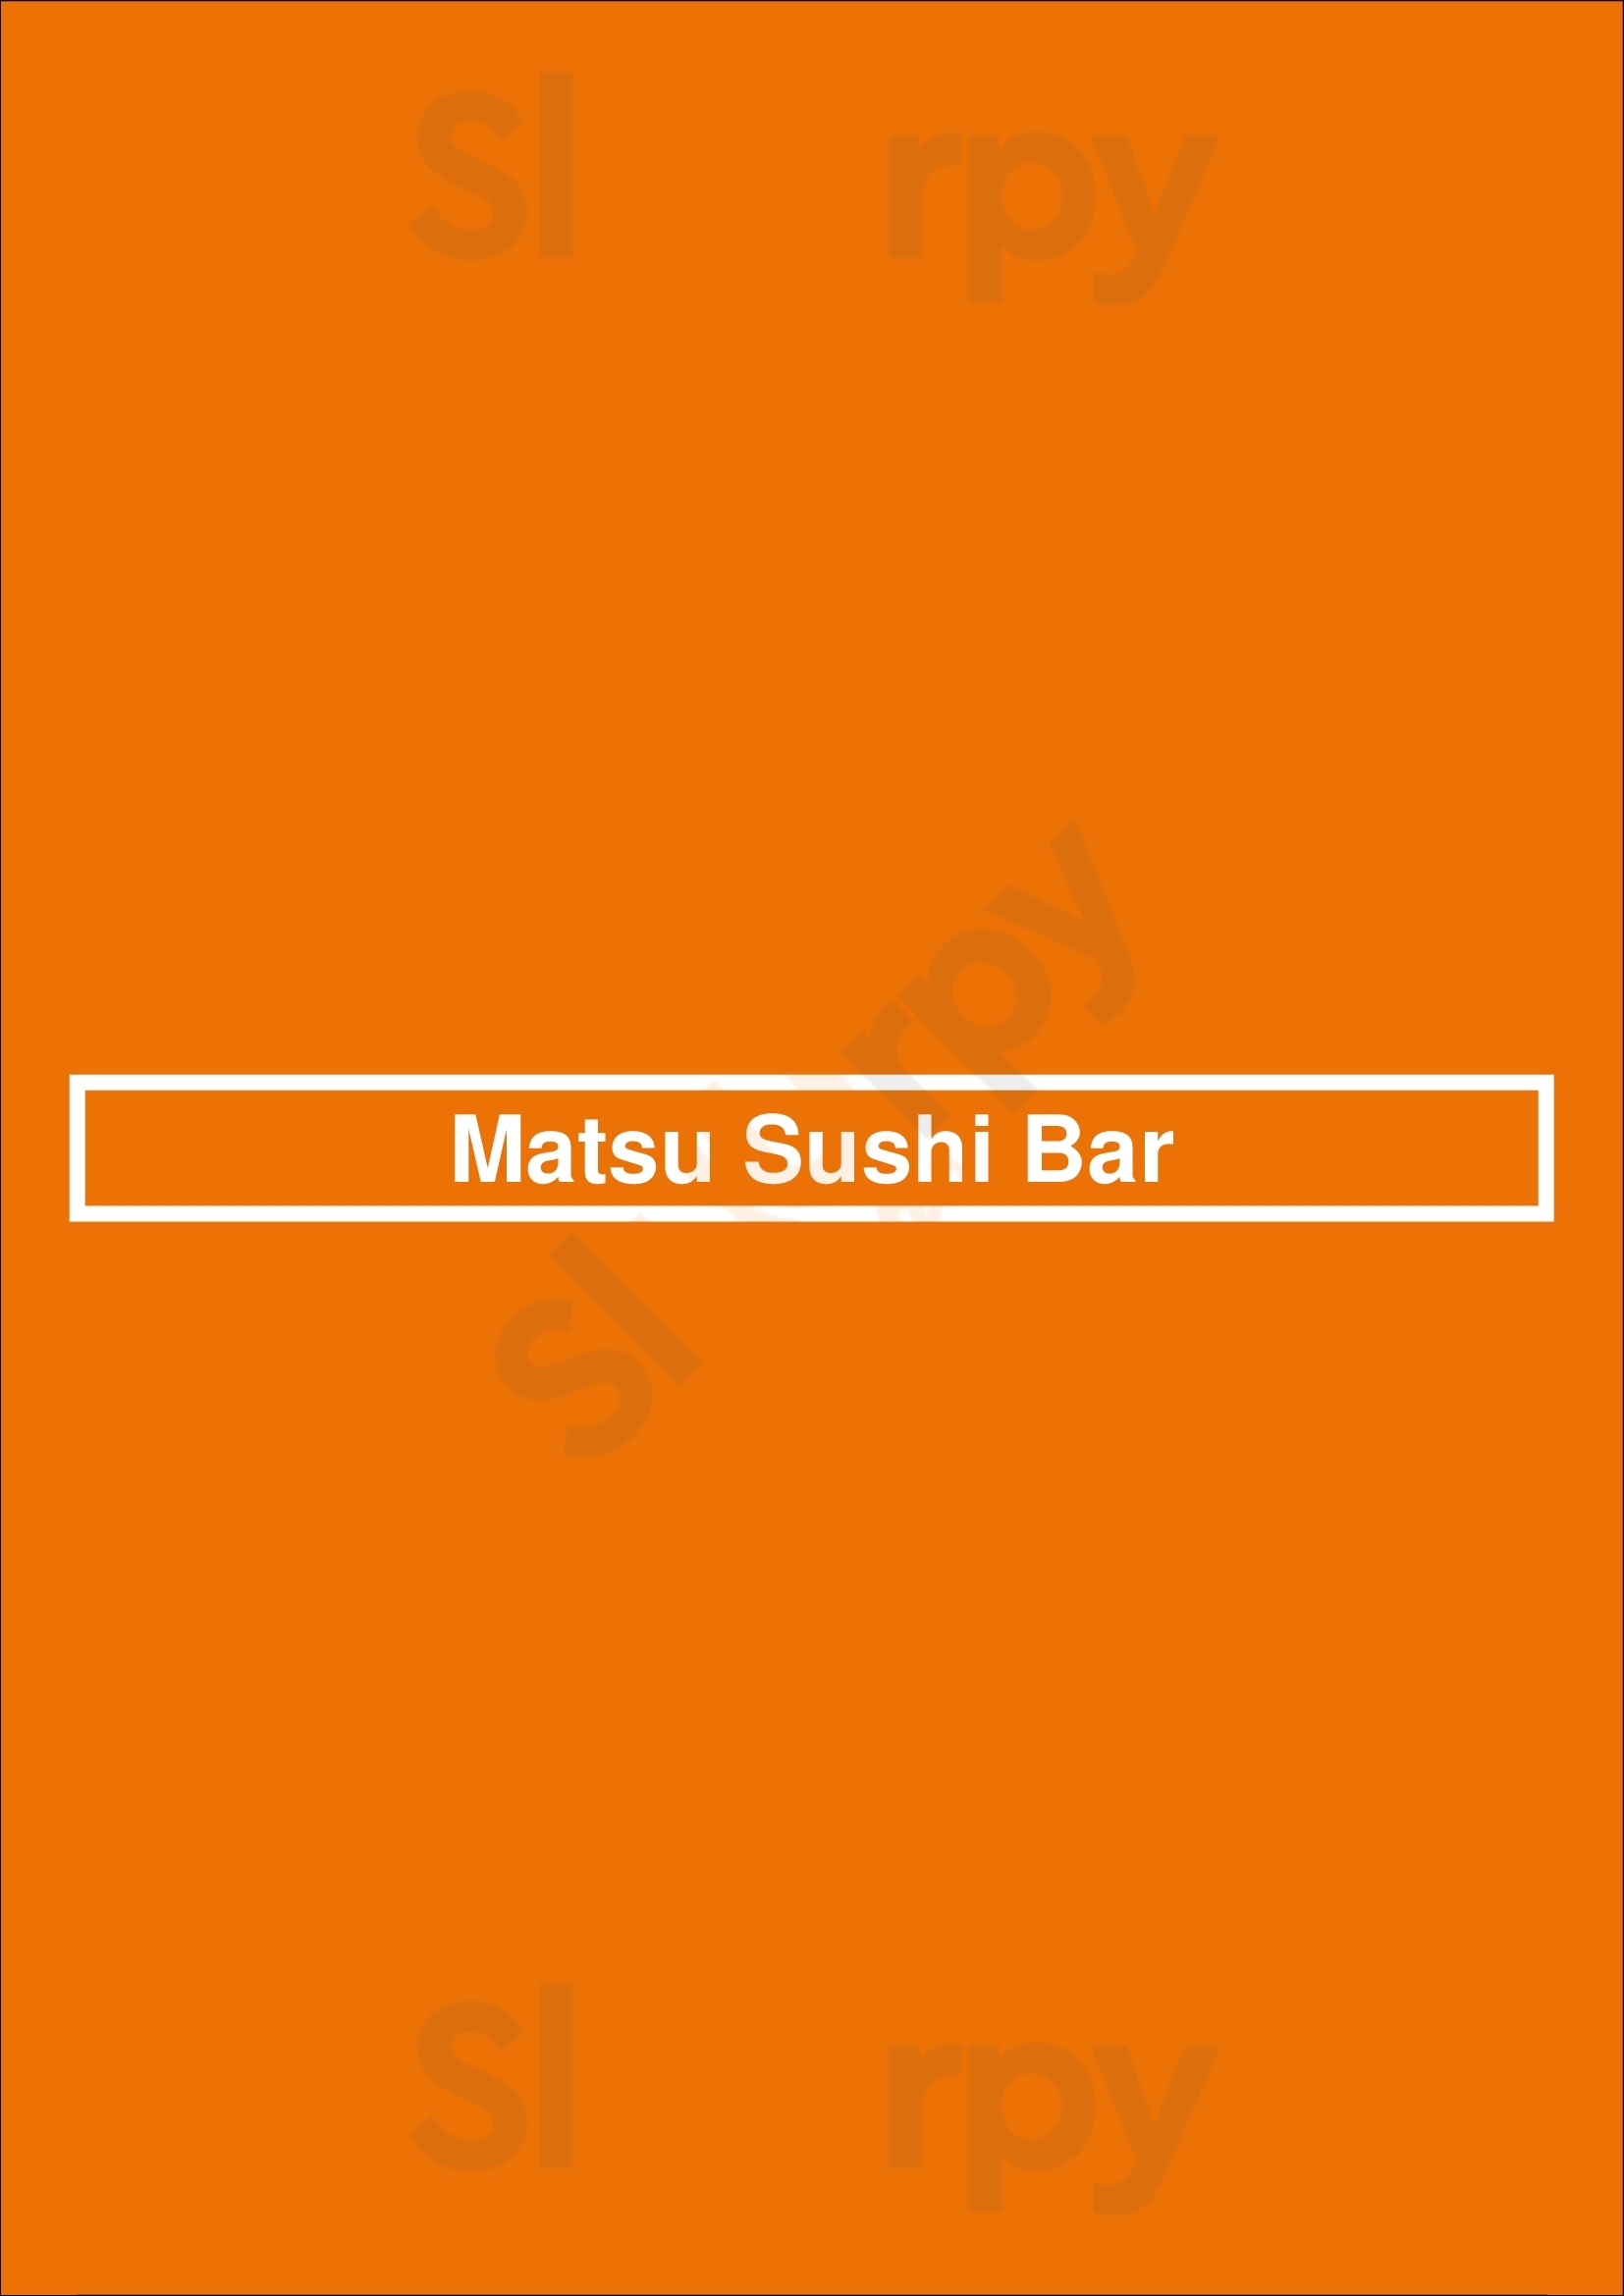 Matsu Sushi Bar Houston Menu - 1